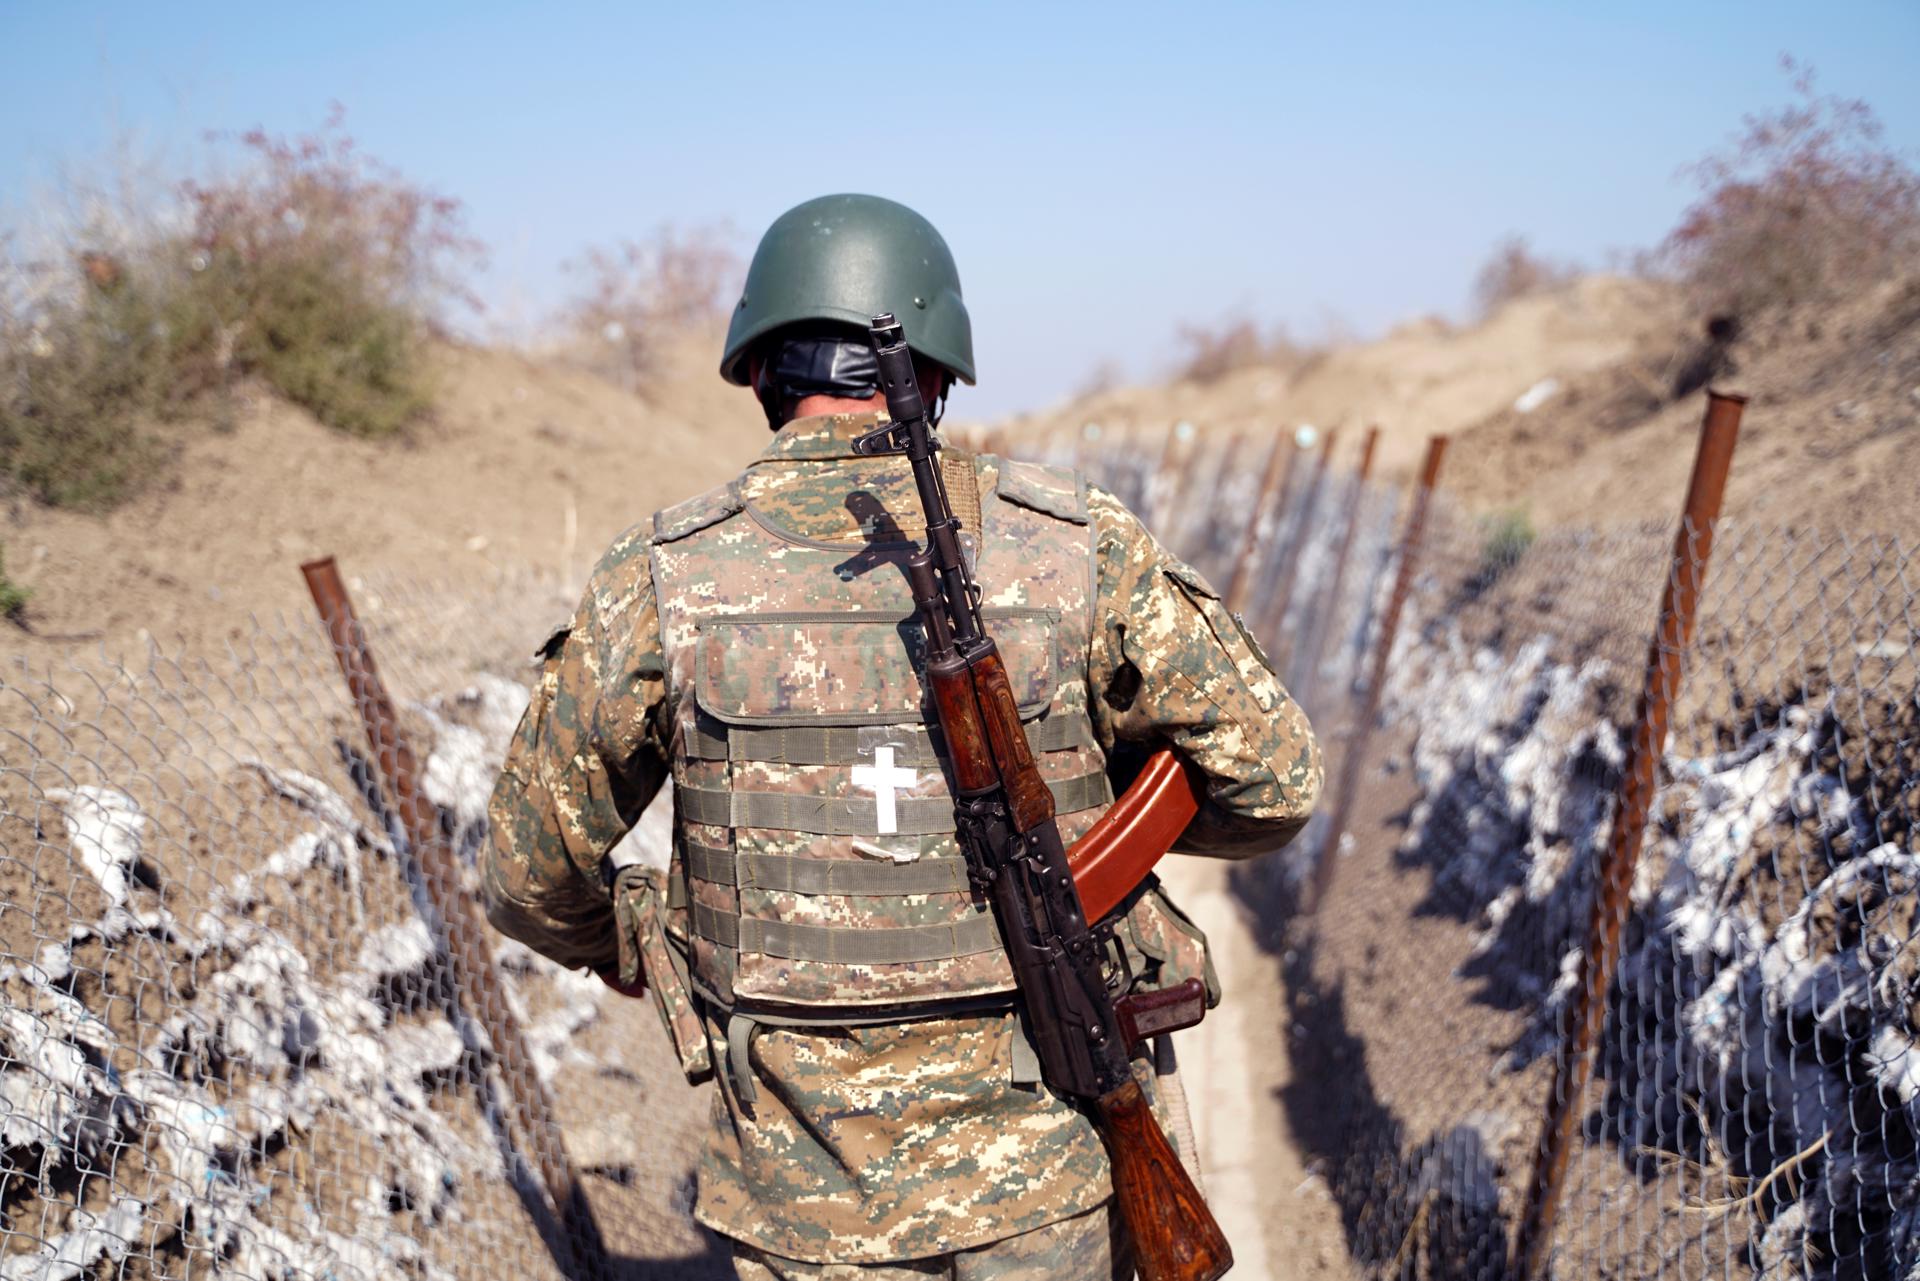 El Kremlin anuncia la salida de las fuerzas de pacificación rusas de Nagorno Karabaj